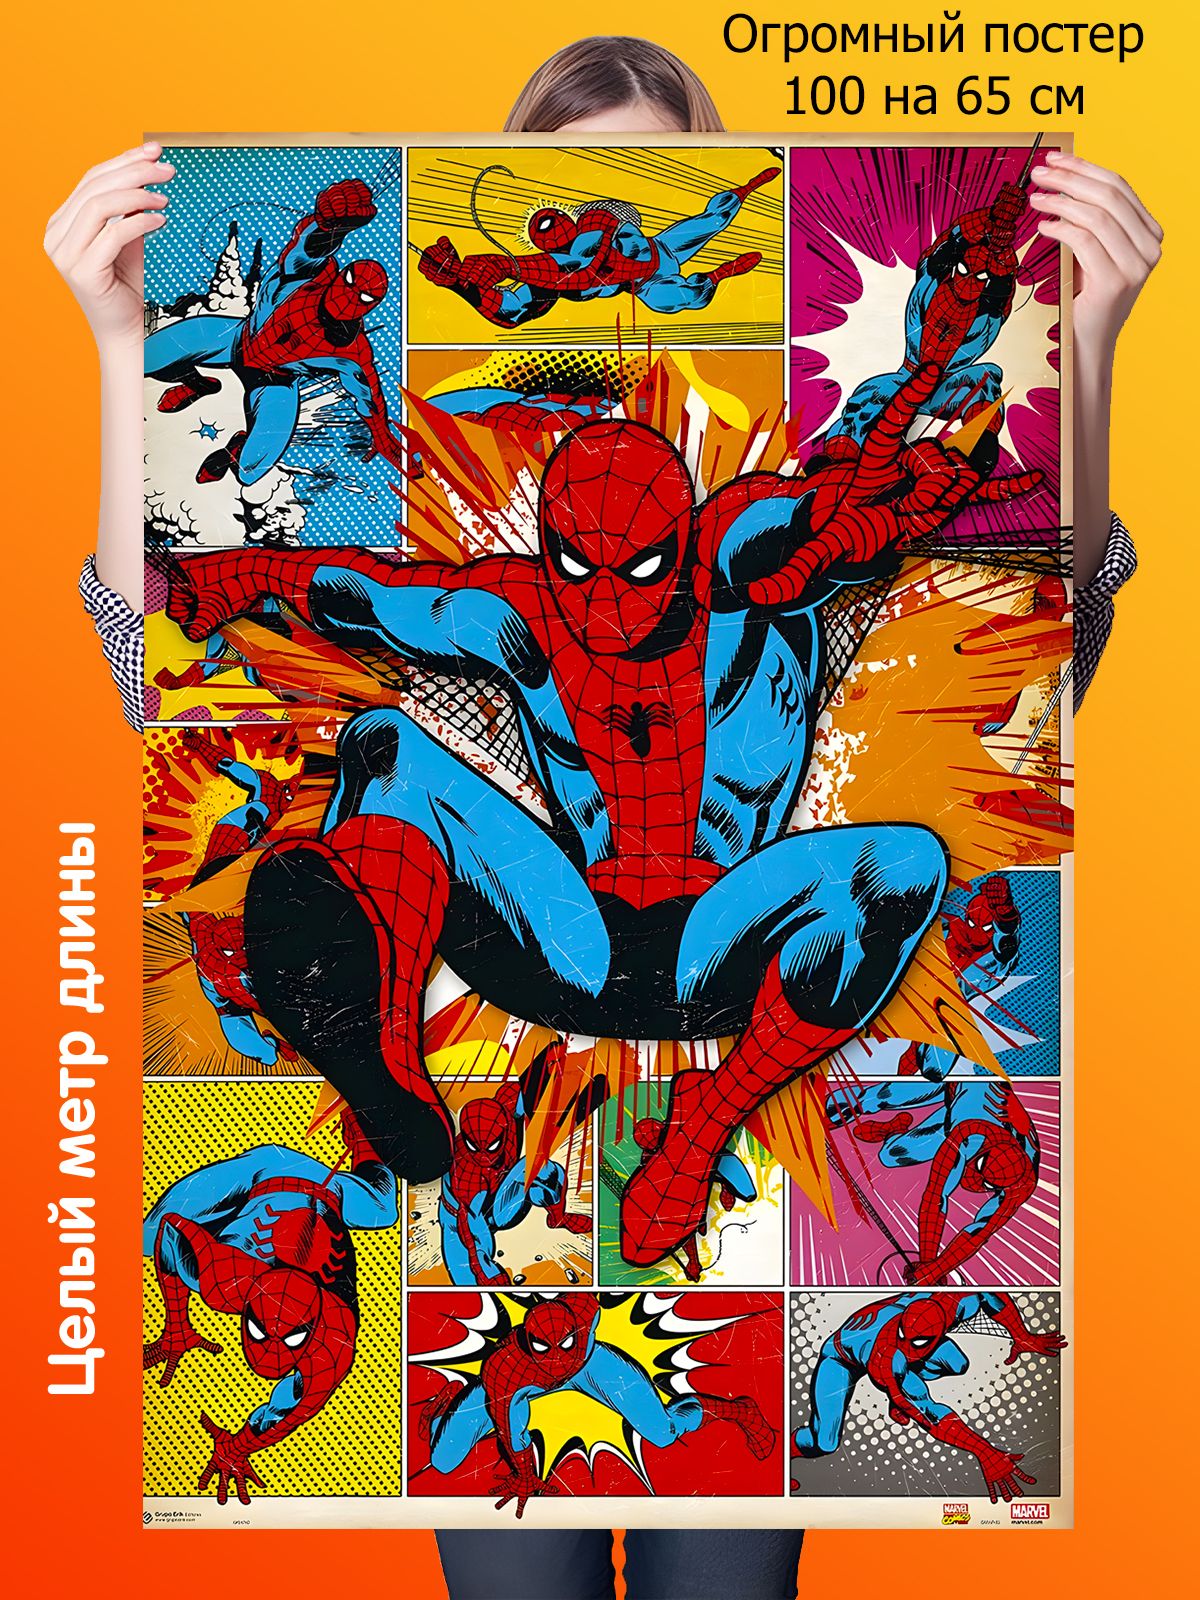 Спайдер комикс. Комиксы Марвел Spider man. Человек паук Постер комикс. Марвел человек паук. Постер Марвел человек паук.